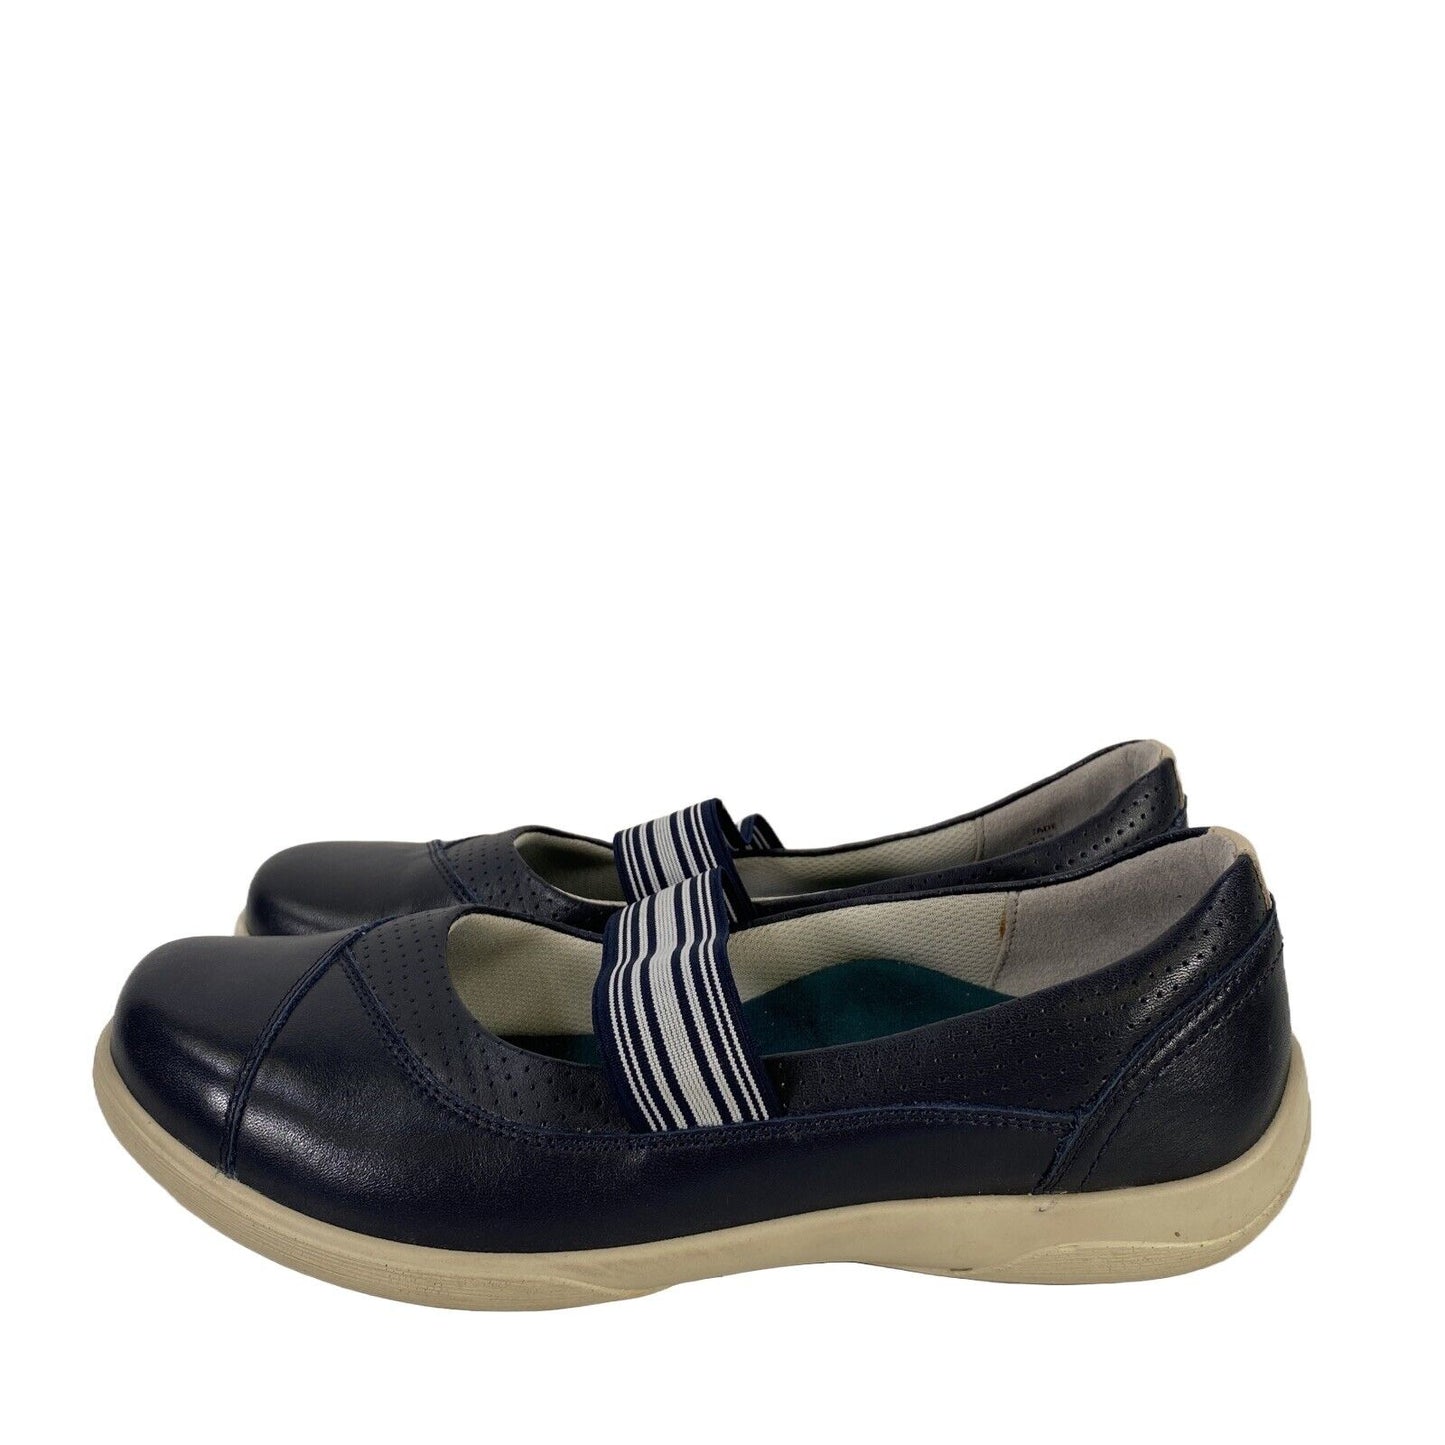 Padders Zapatos cómodos Mary Jane Jade de cuero azul para mujer - 7.5